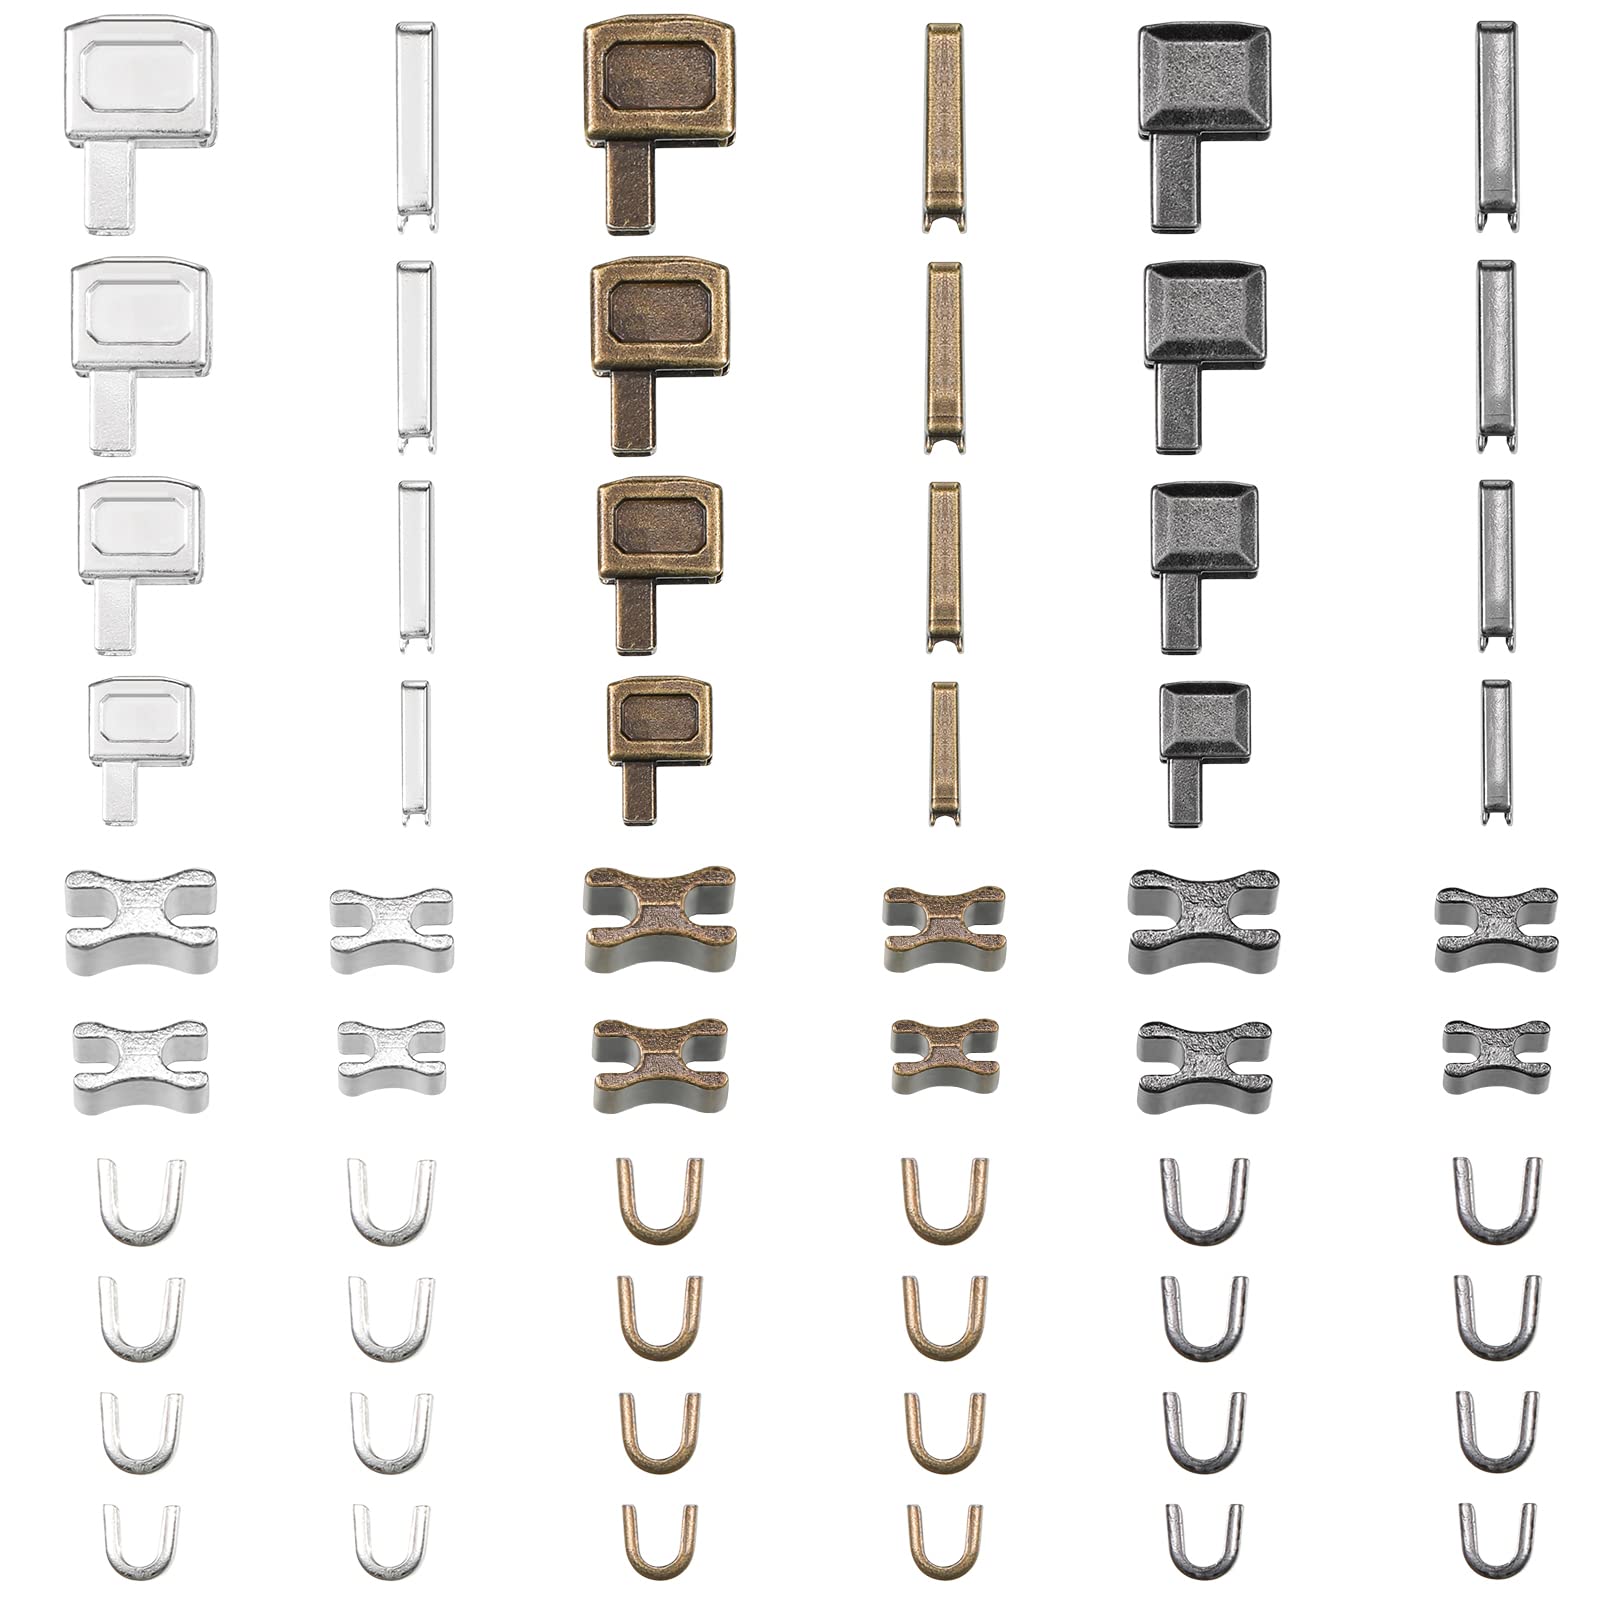 Resin Lock Accessories, Sewing Zippers Meters